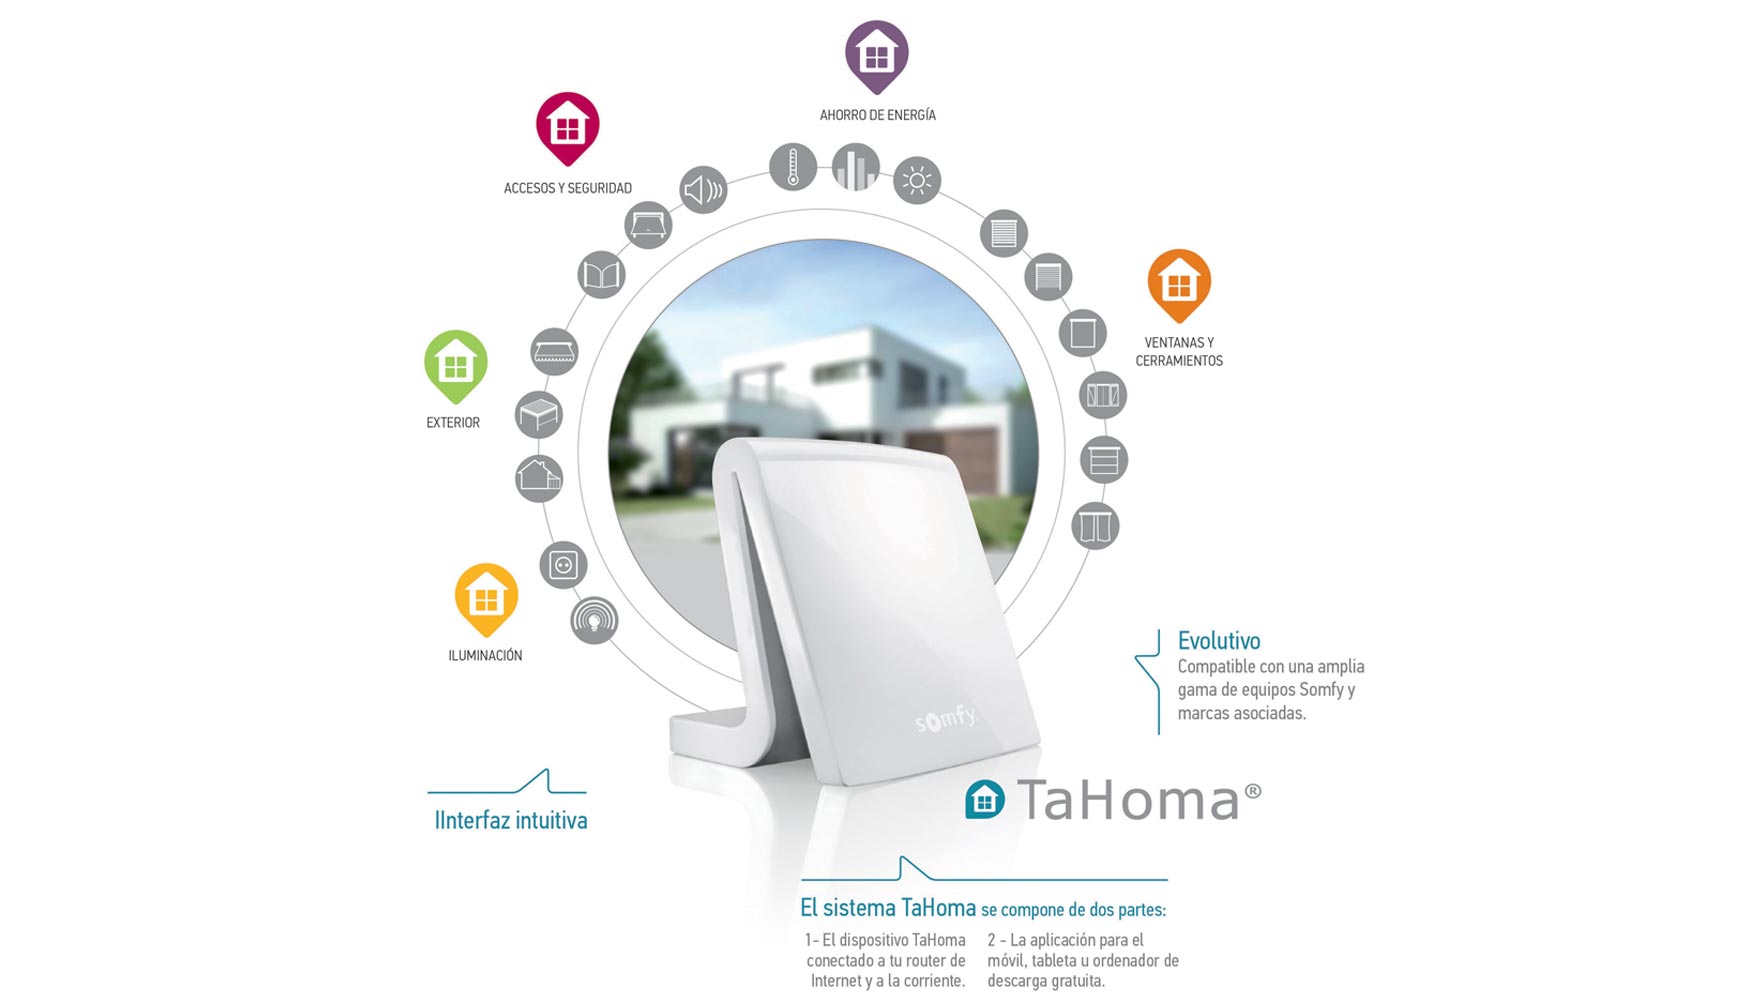 TaHoma ofrece al usuario un nuevo concepto de hogar conectado